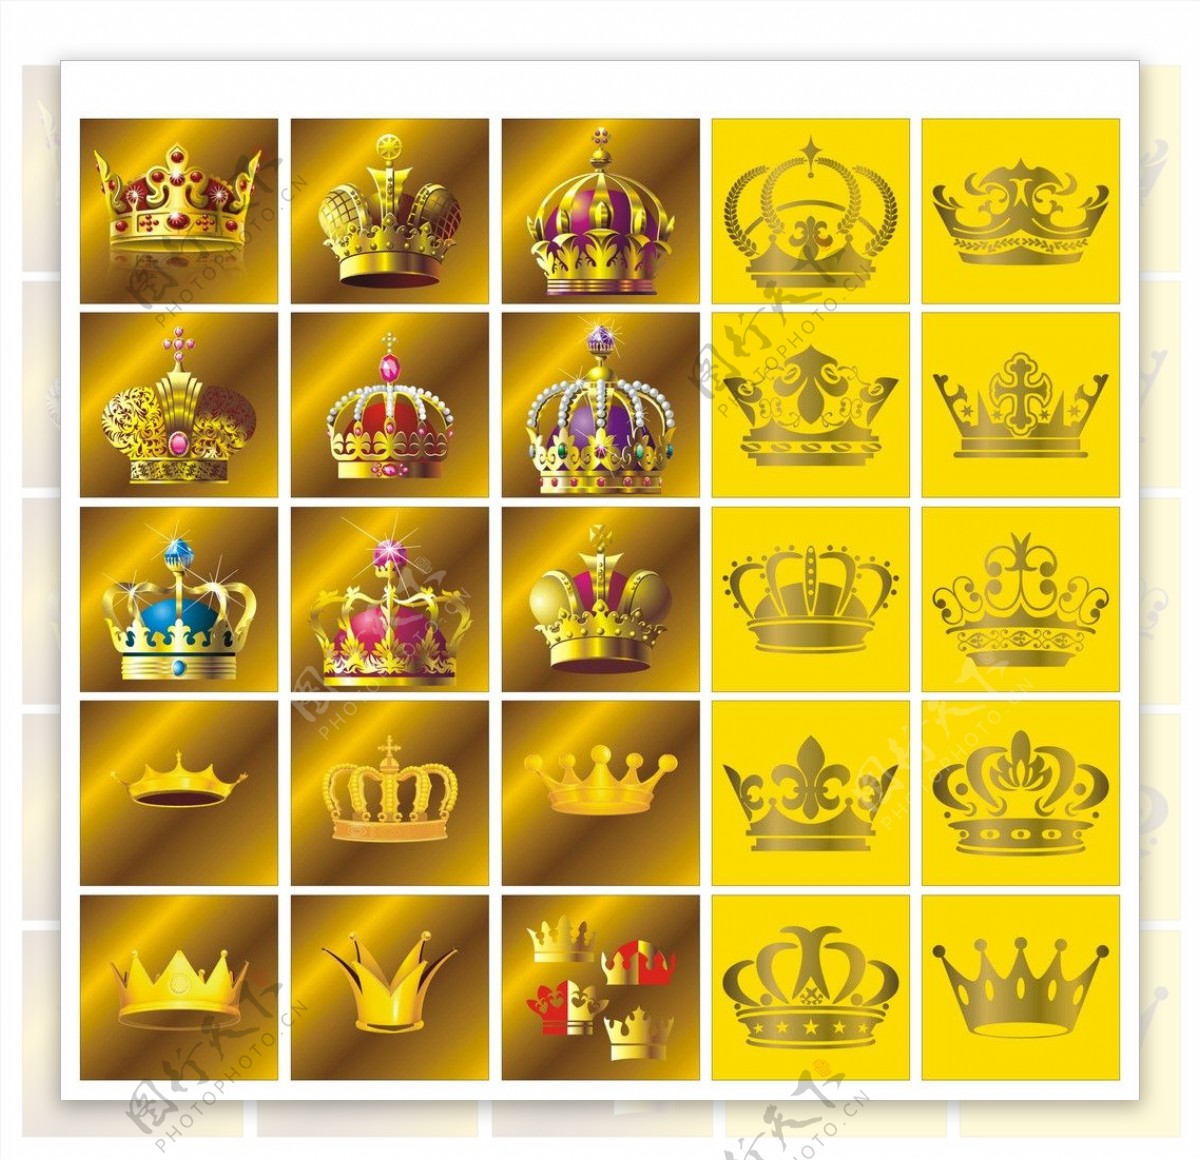 皇冠皇冠矢量图片